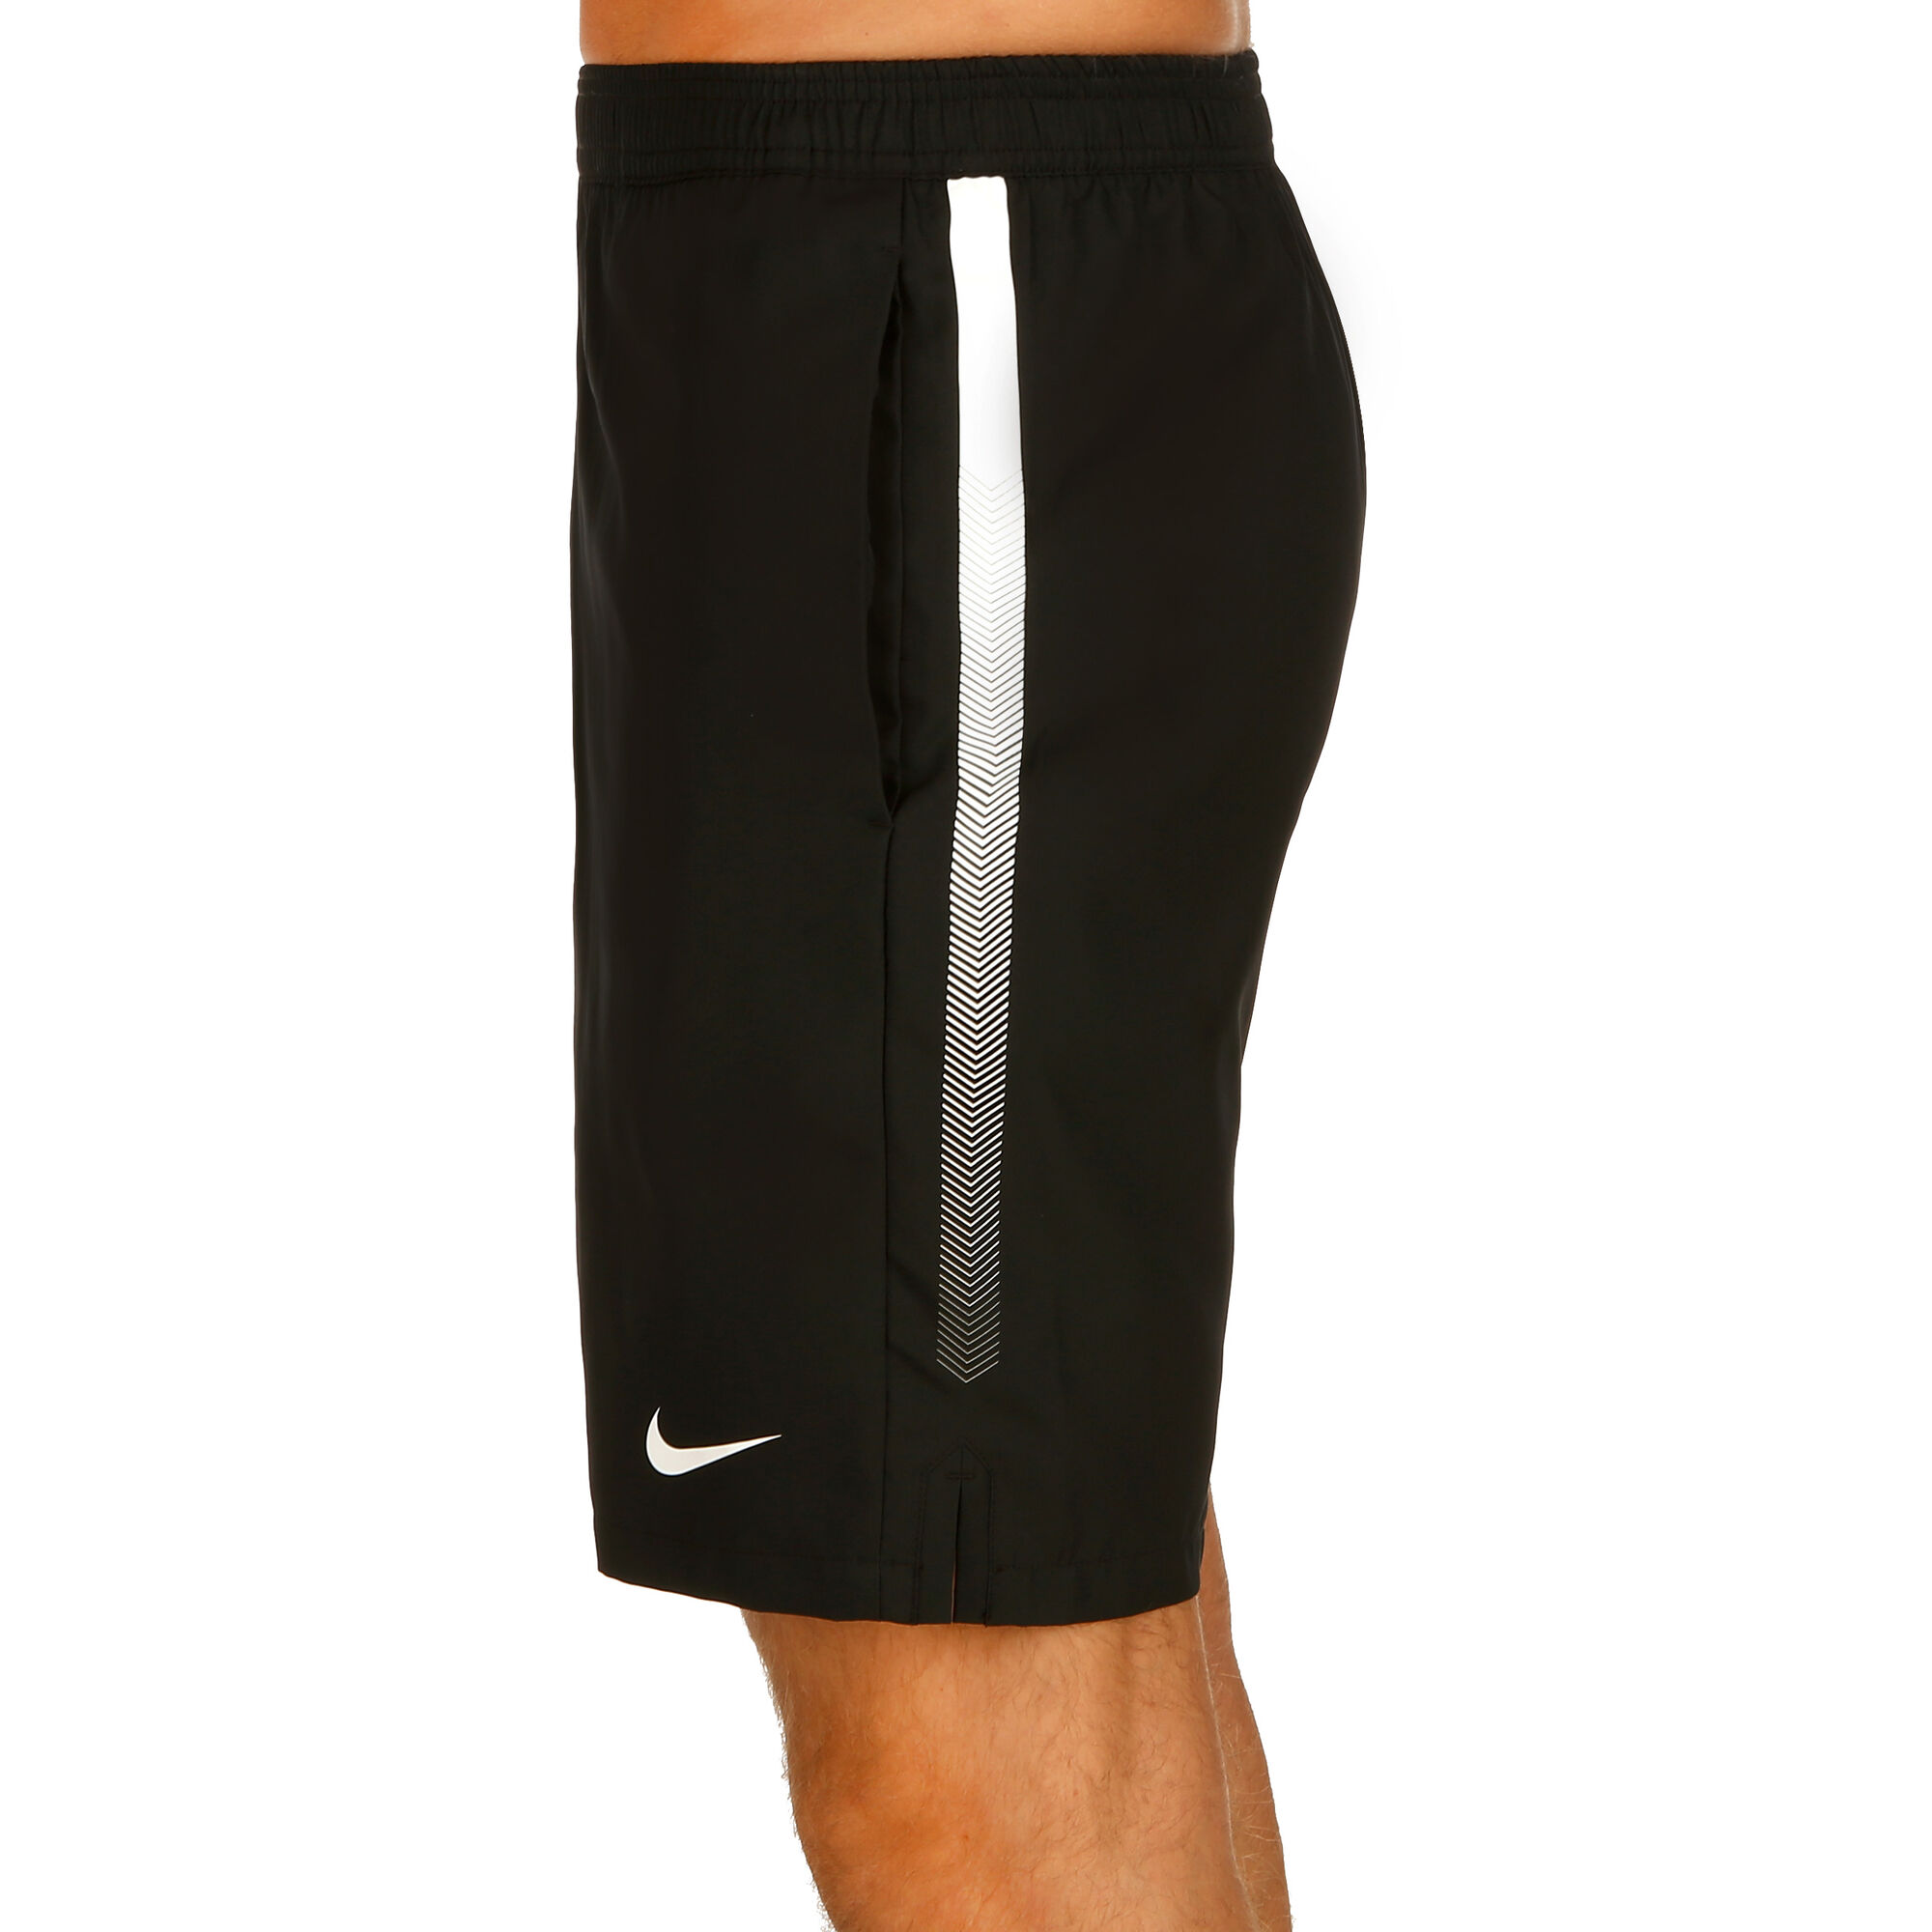 Buy Nike Court Dry Shorts Men Black, White online | Tennis Point UK